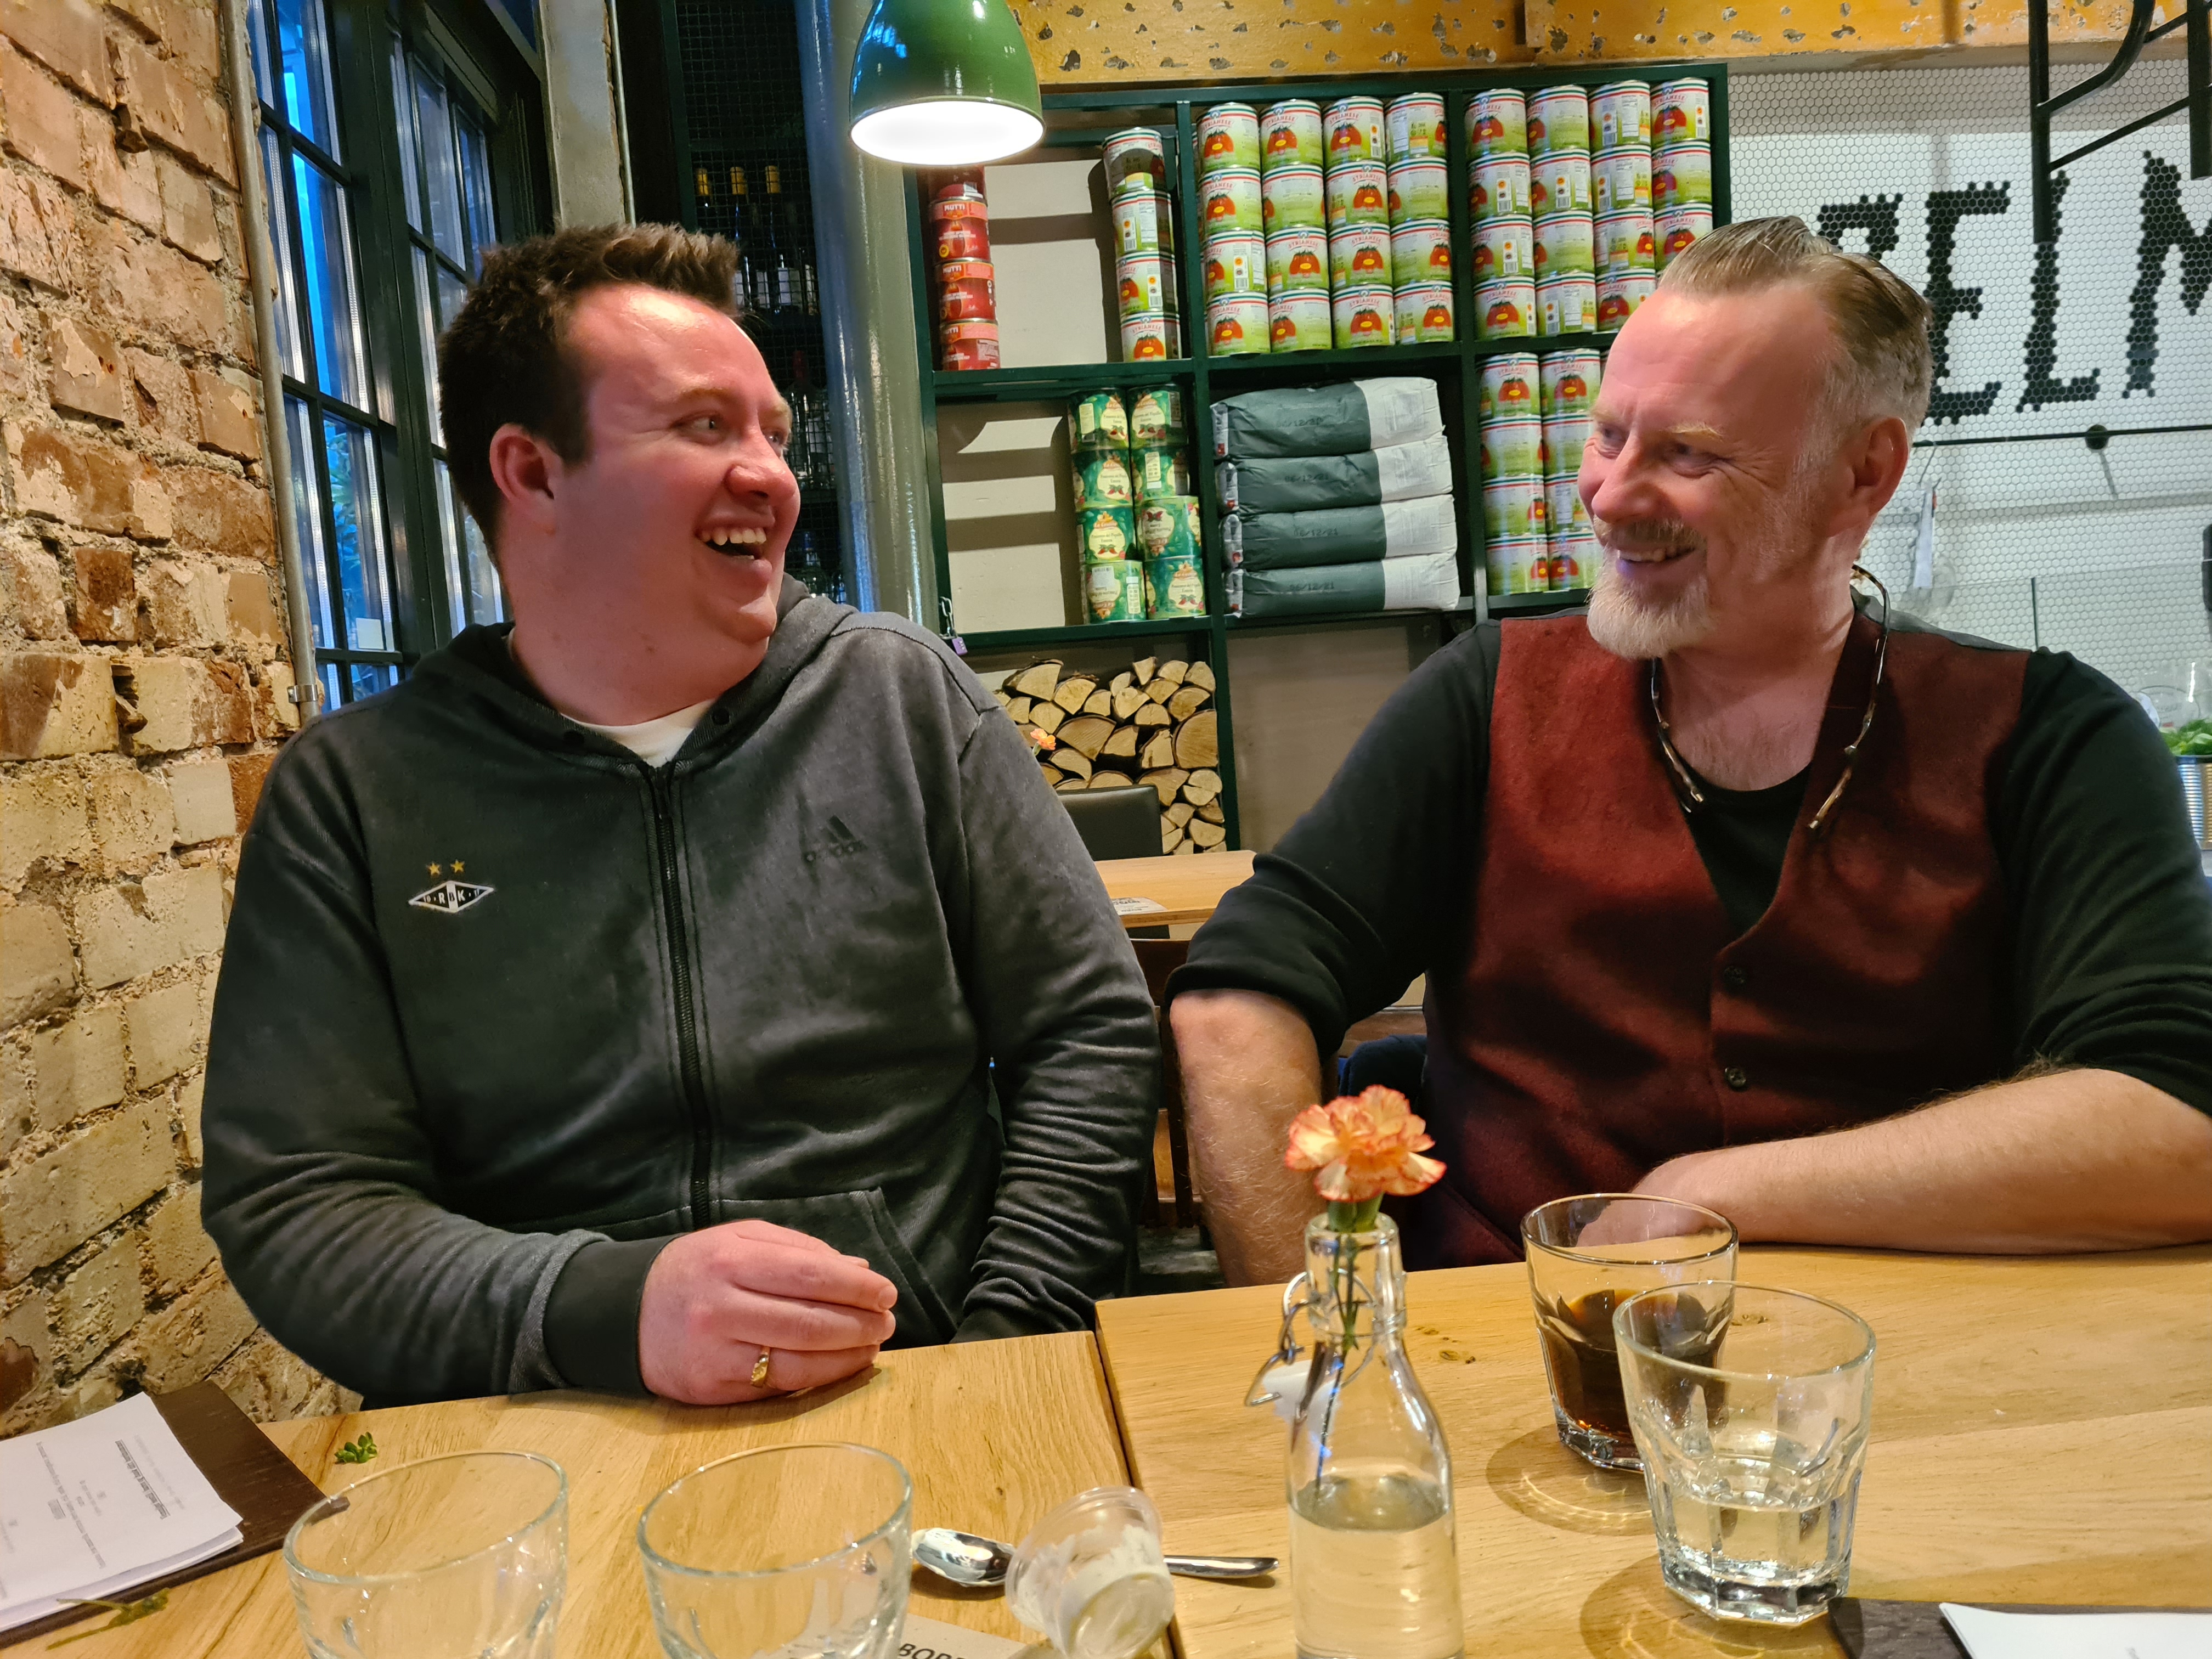 Robert møter lærer Jon, ler sammen, på restaurant